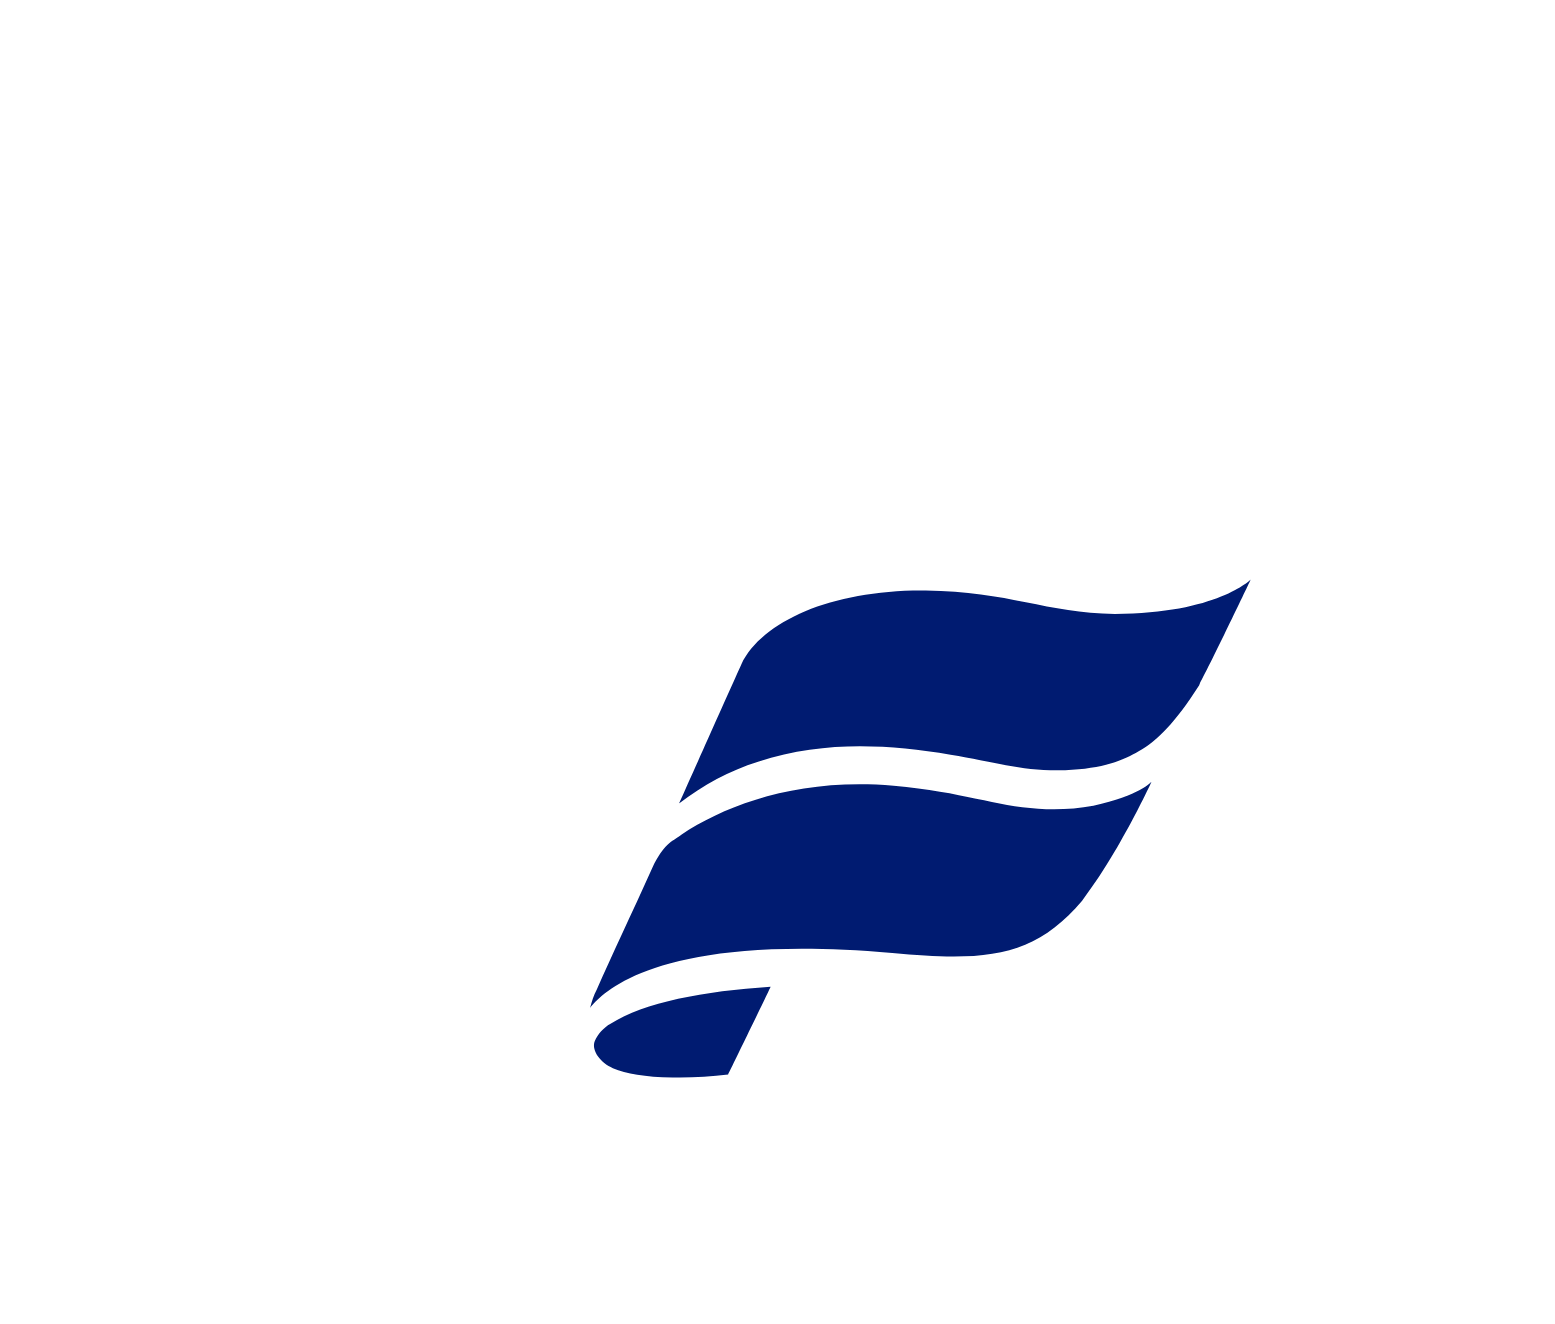 Icelandair logo for dark backgrounds (transparent PNG)